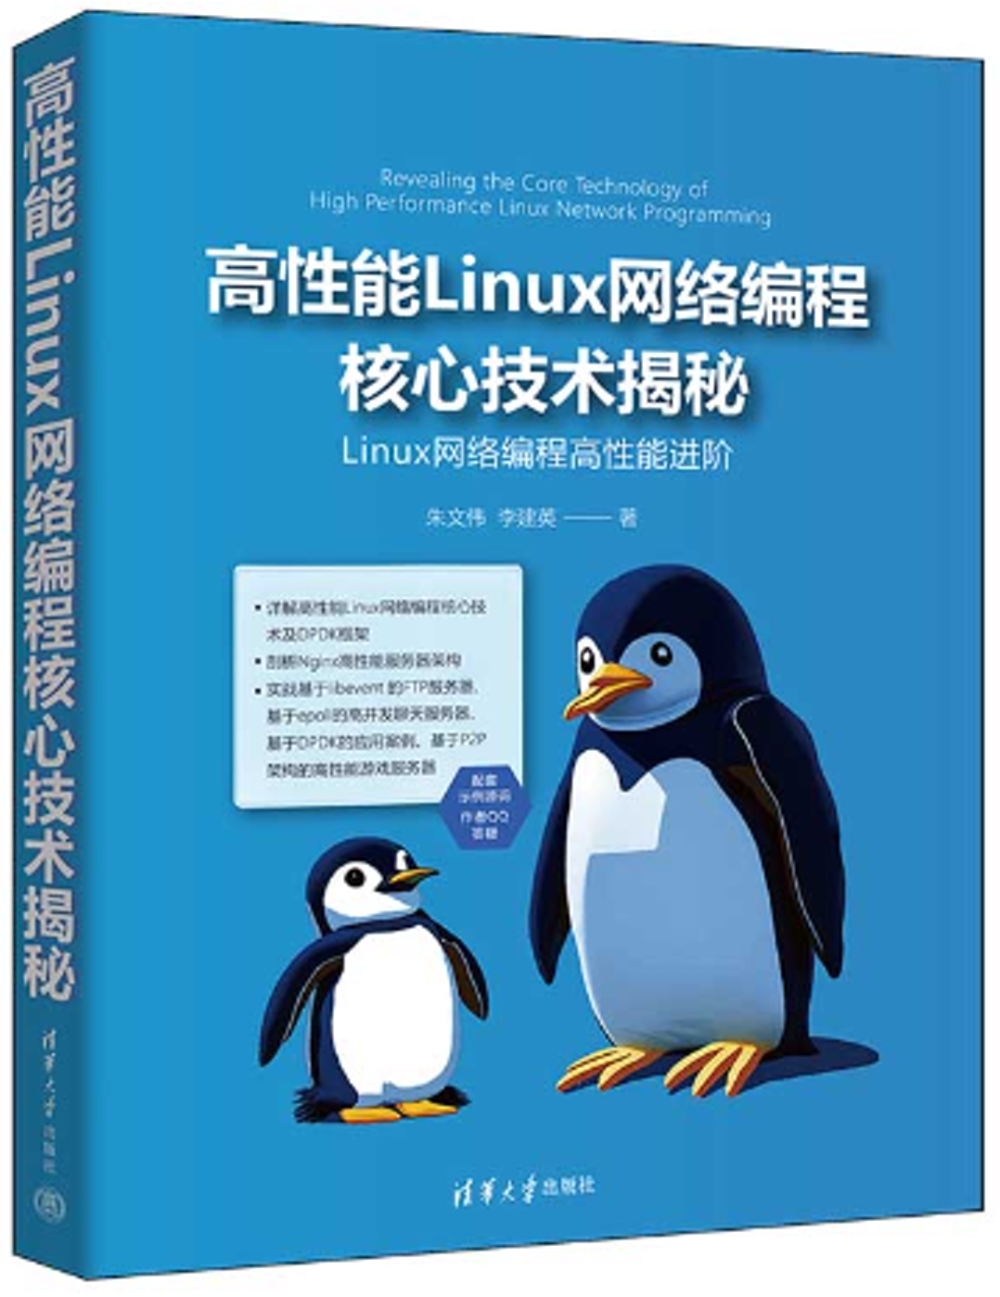 高性能Linux網絡編程核心技術揭秘